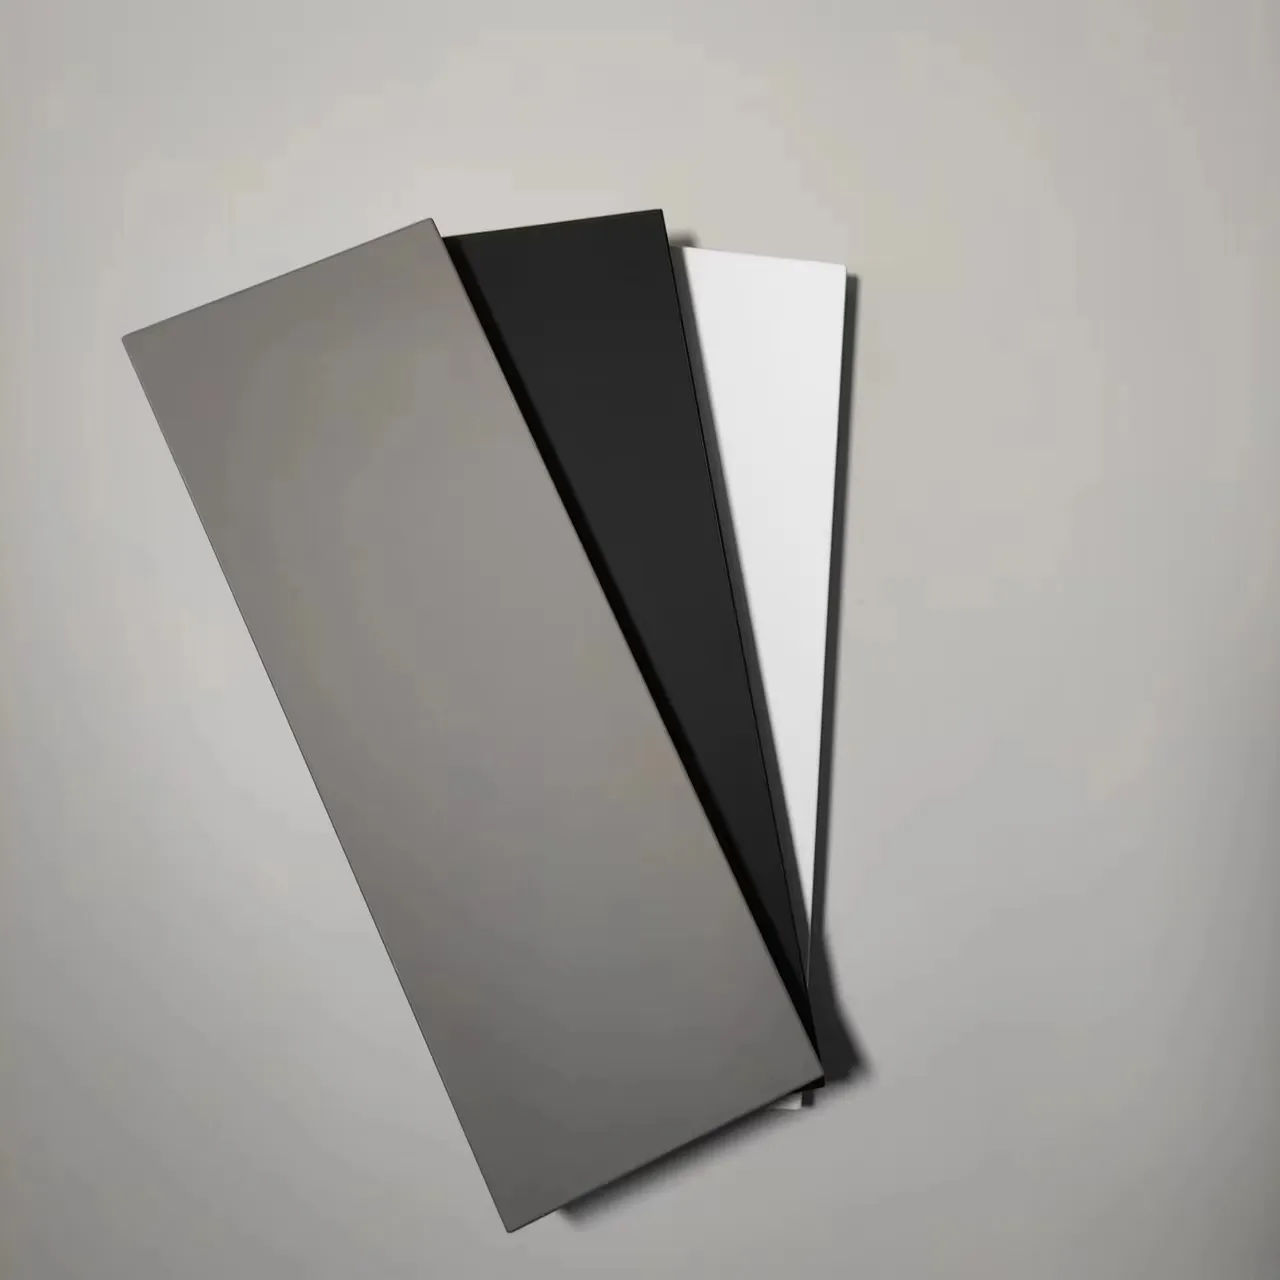 Индивидуальные декоративные облицовочные панели из меламина SENOSAN PMMA ABS ламинированные МДФ фанерные панели глянцевый матовый